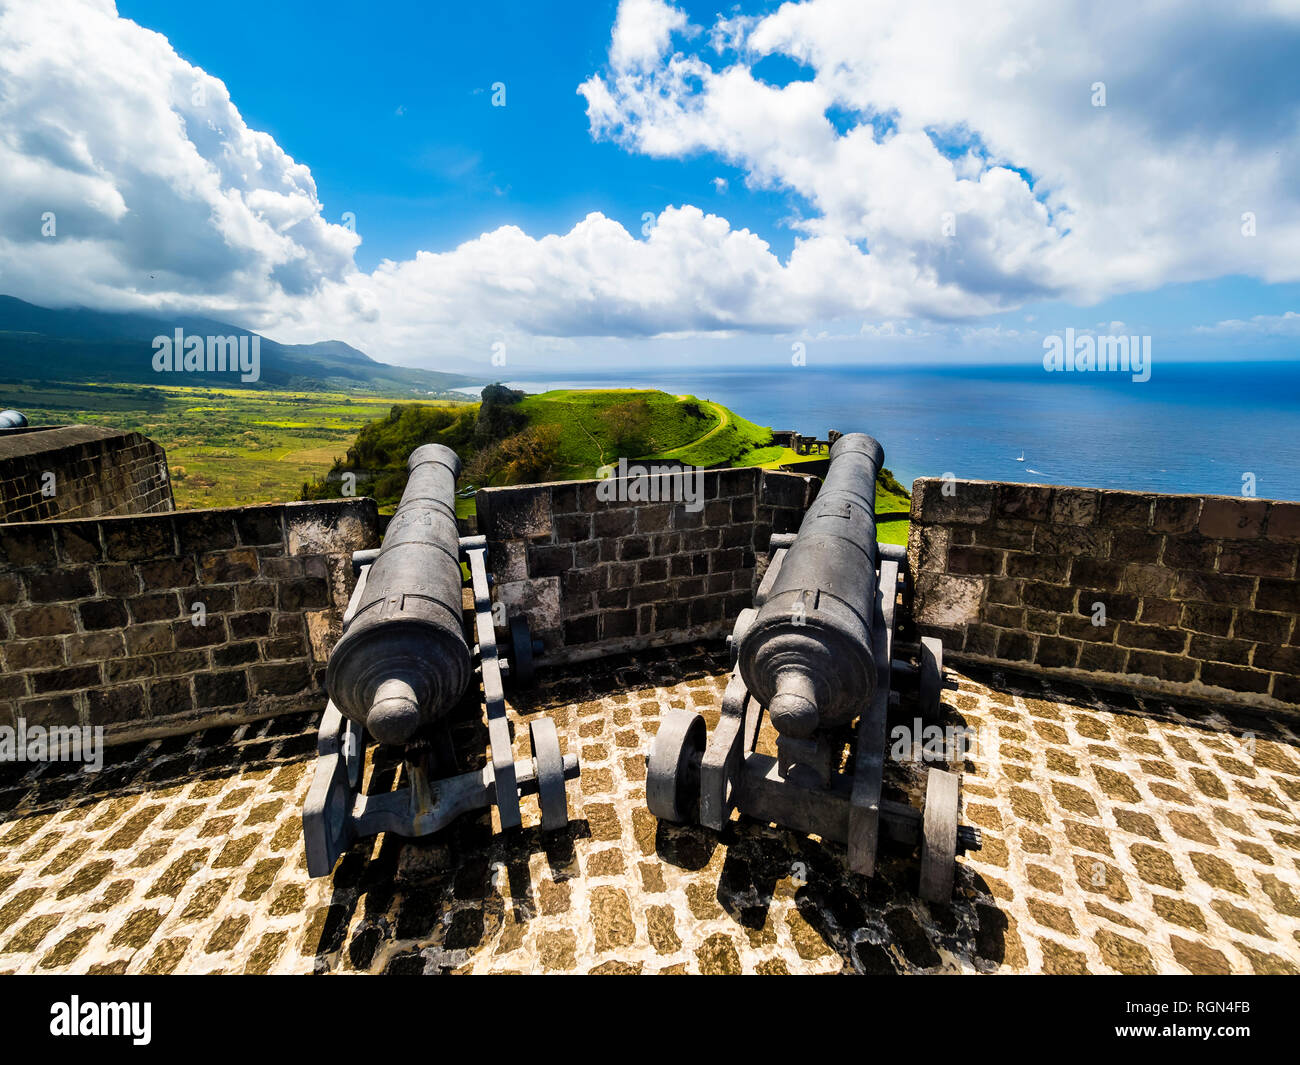 Karibik, Kleine Antillen, St. Kitts und Nevis Basseterre, Brimstone Hill Fortress, alte Kanone Stockfoto